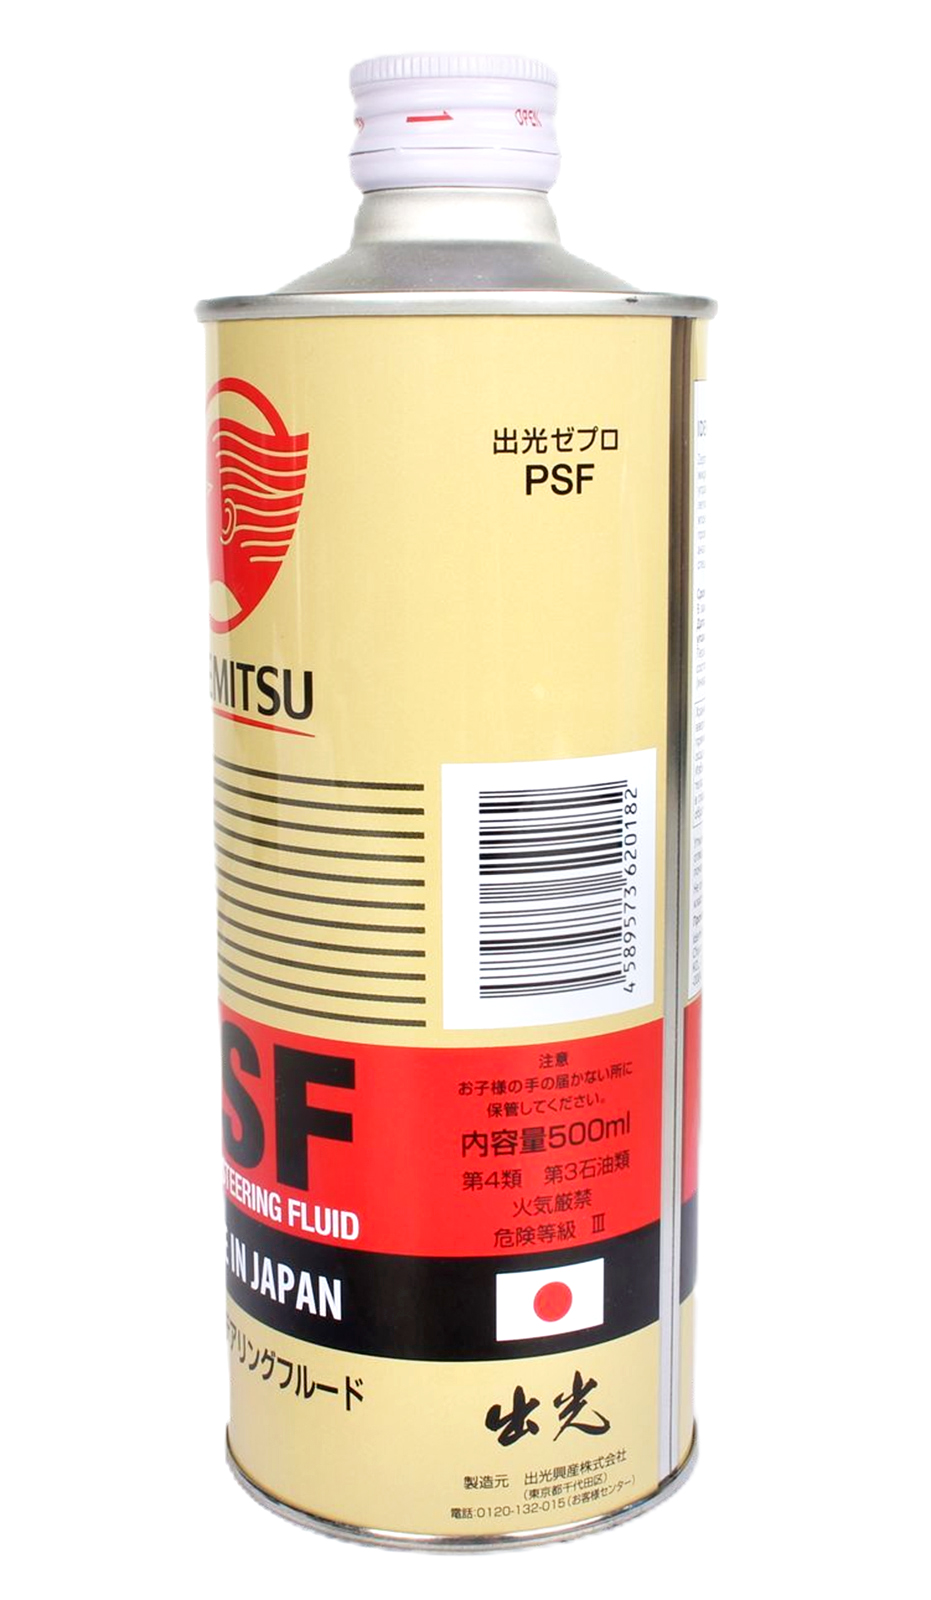 Жидкость гидроусилителя руля Idemitsu  Zepro PSF 0.5 л 1647-0005 фотография №2